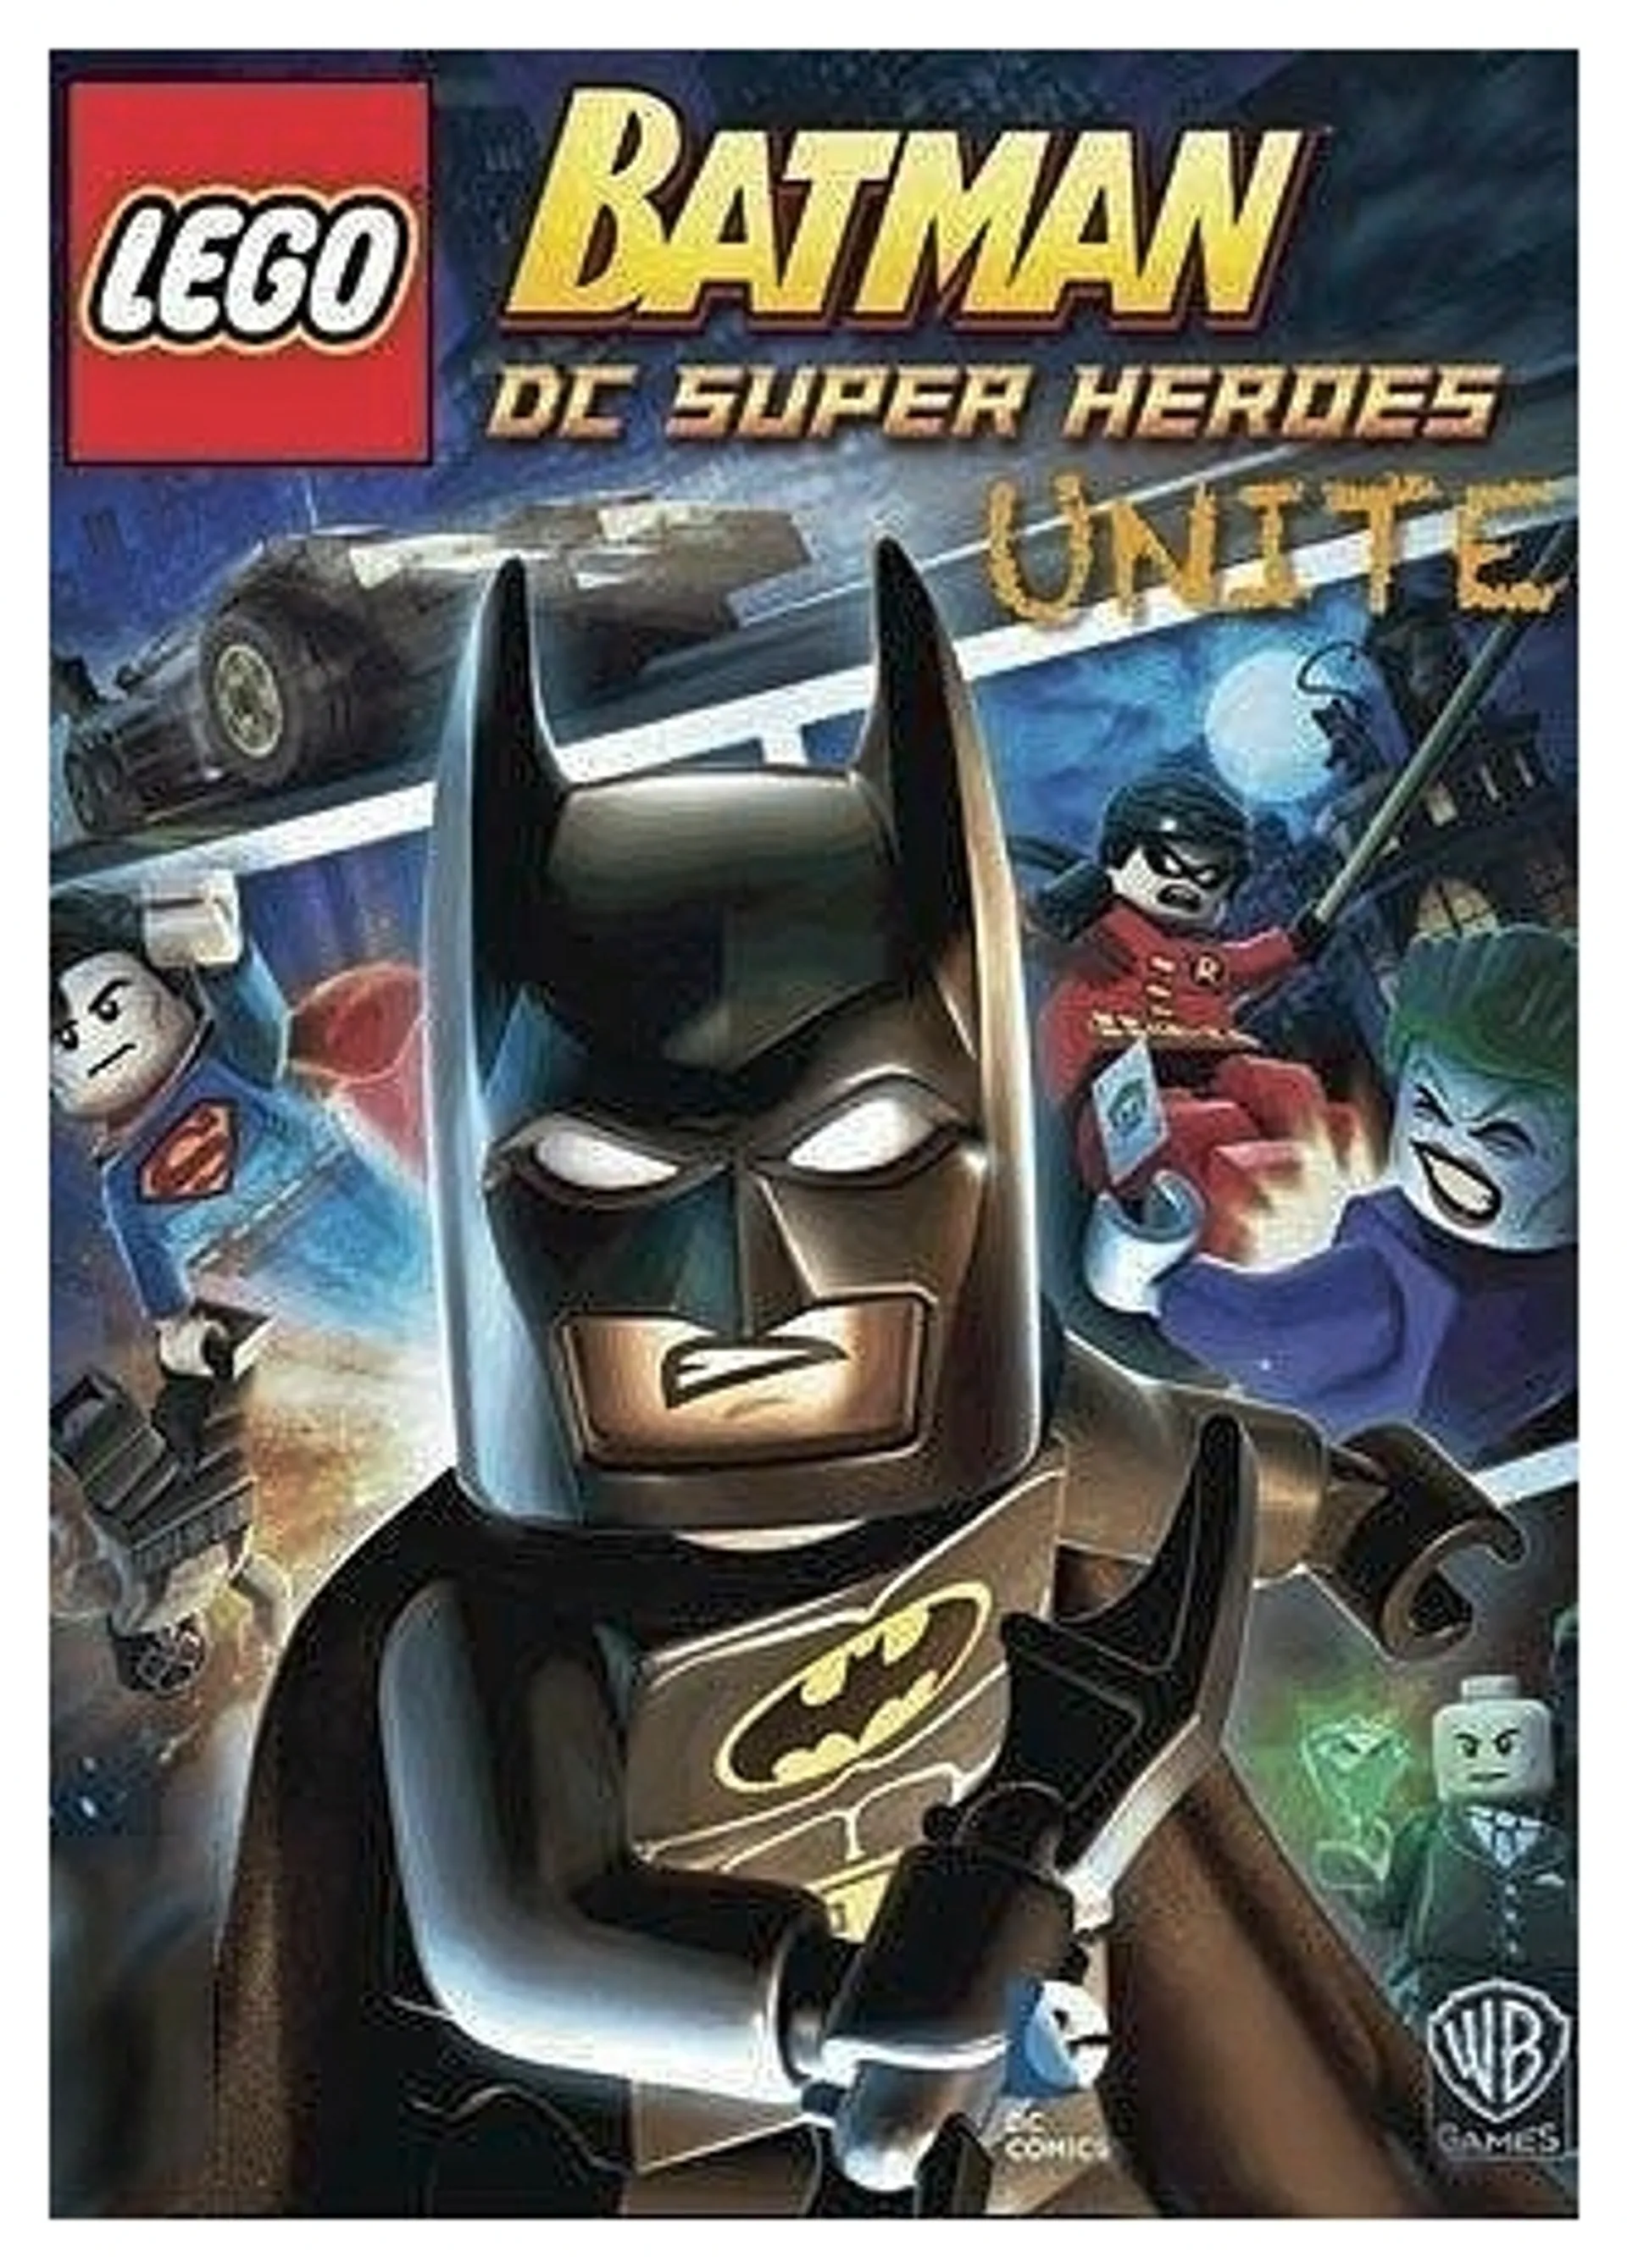 Lego Batman - The Movie: DC Superheros Unite DVD